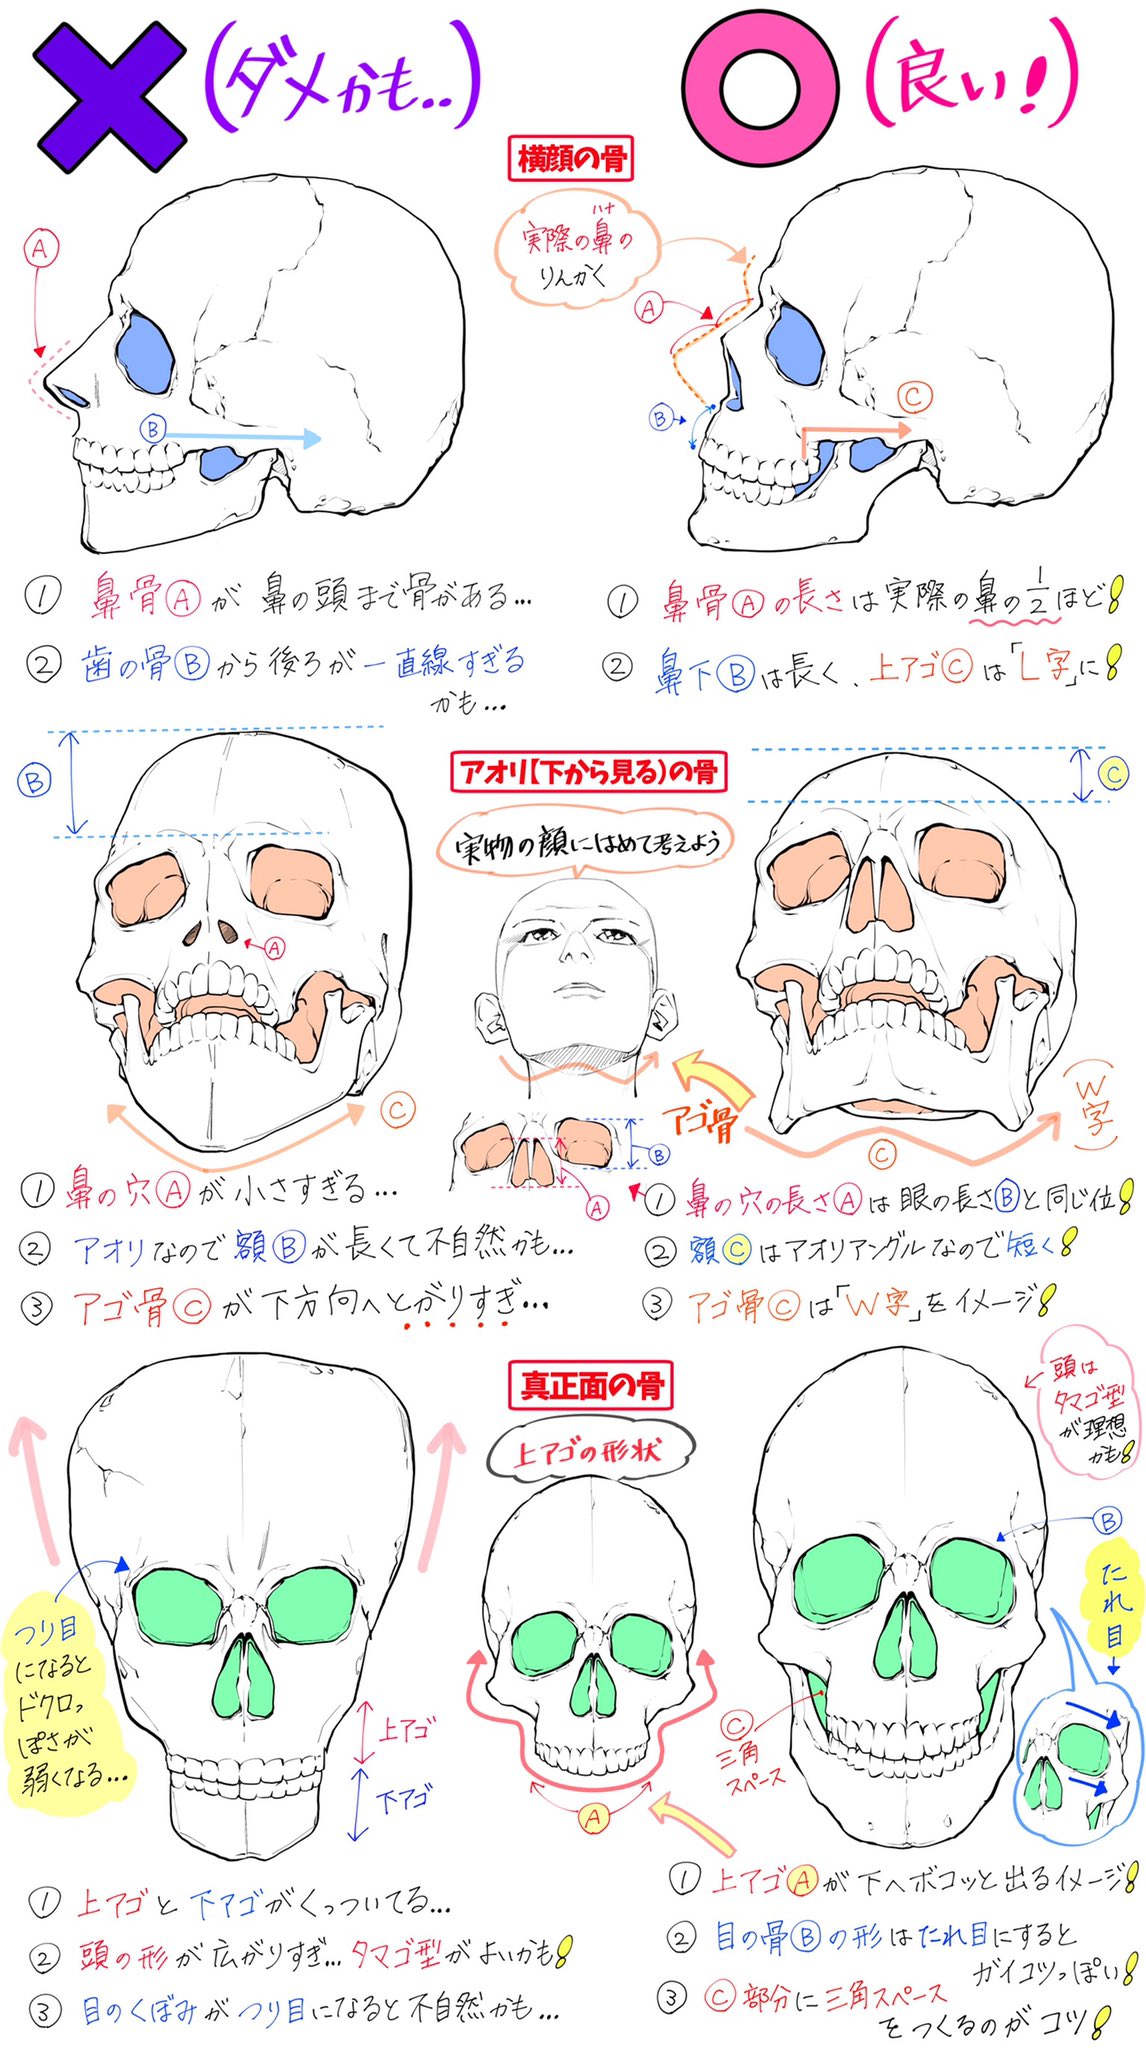 吉村拓也 イラスト講座 骸骨の描き方 骨の角度やドクロ絵 が上達する ダメかも と 良いかも